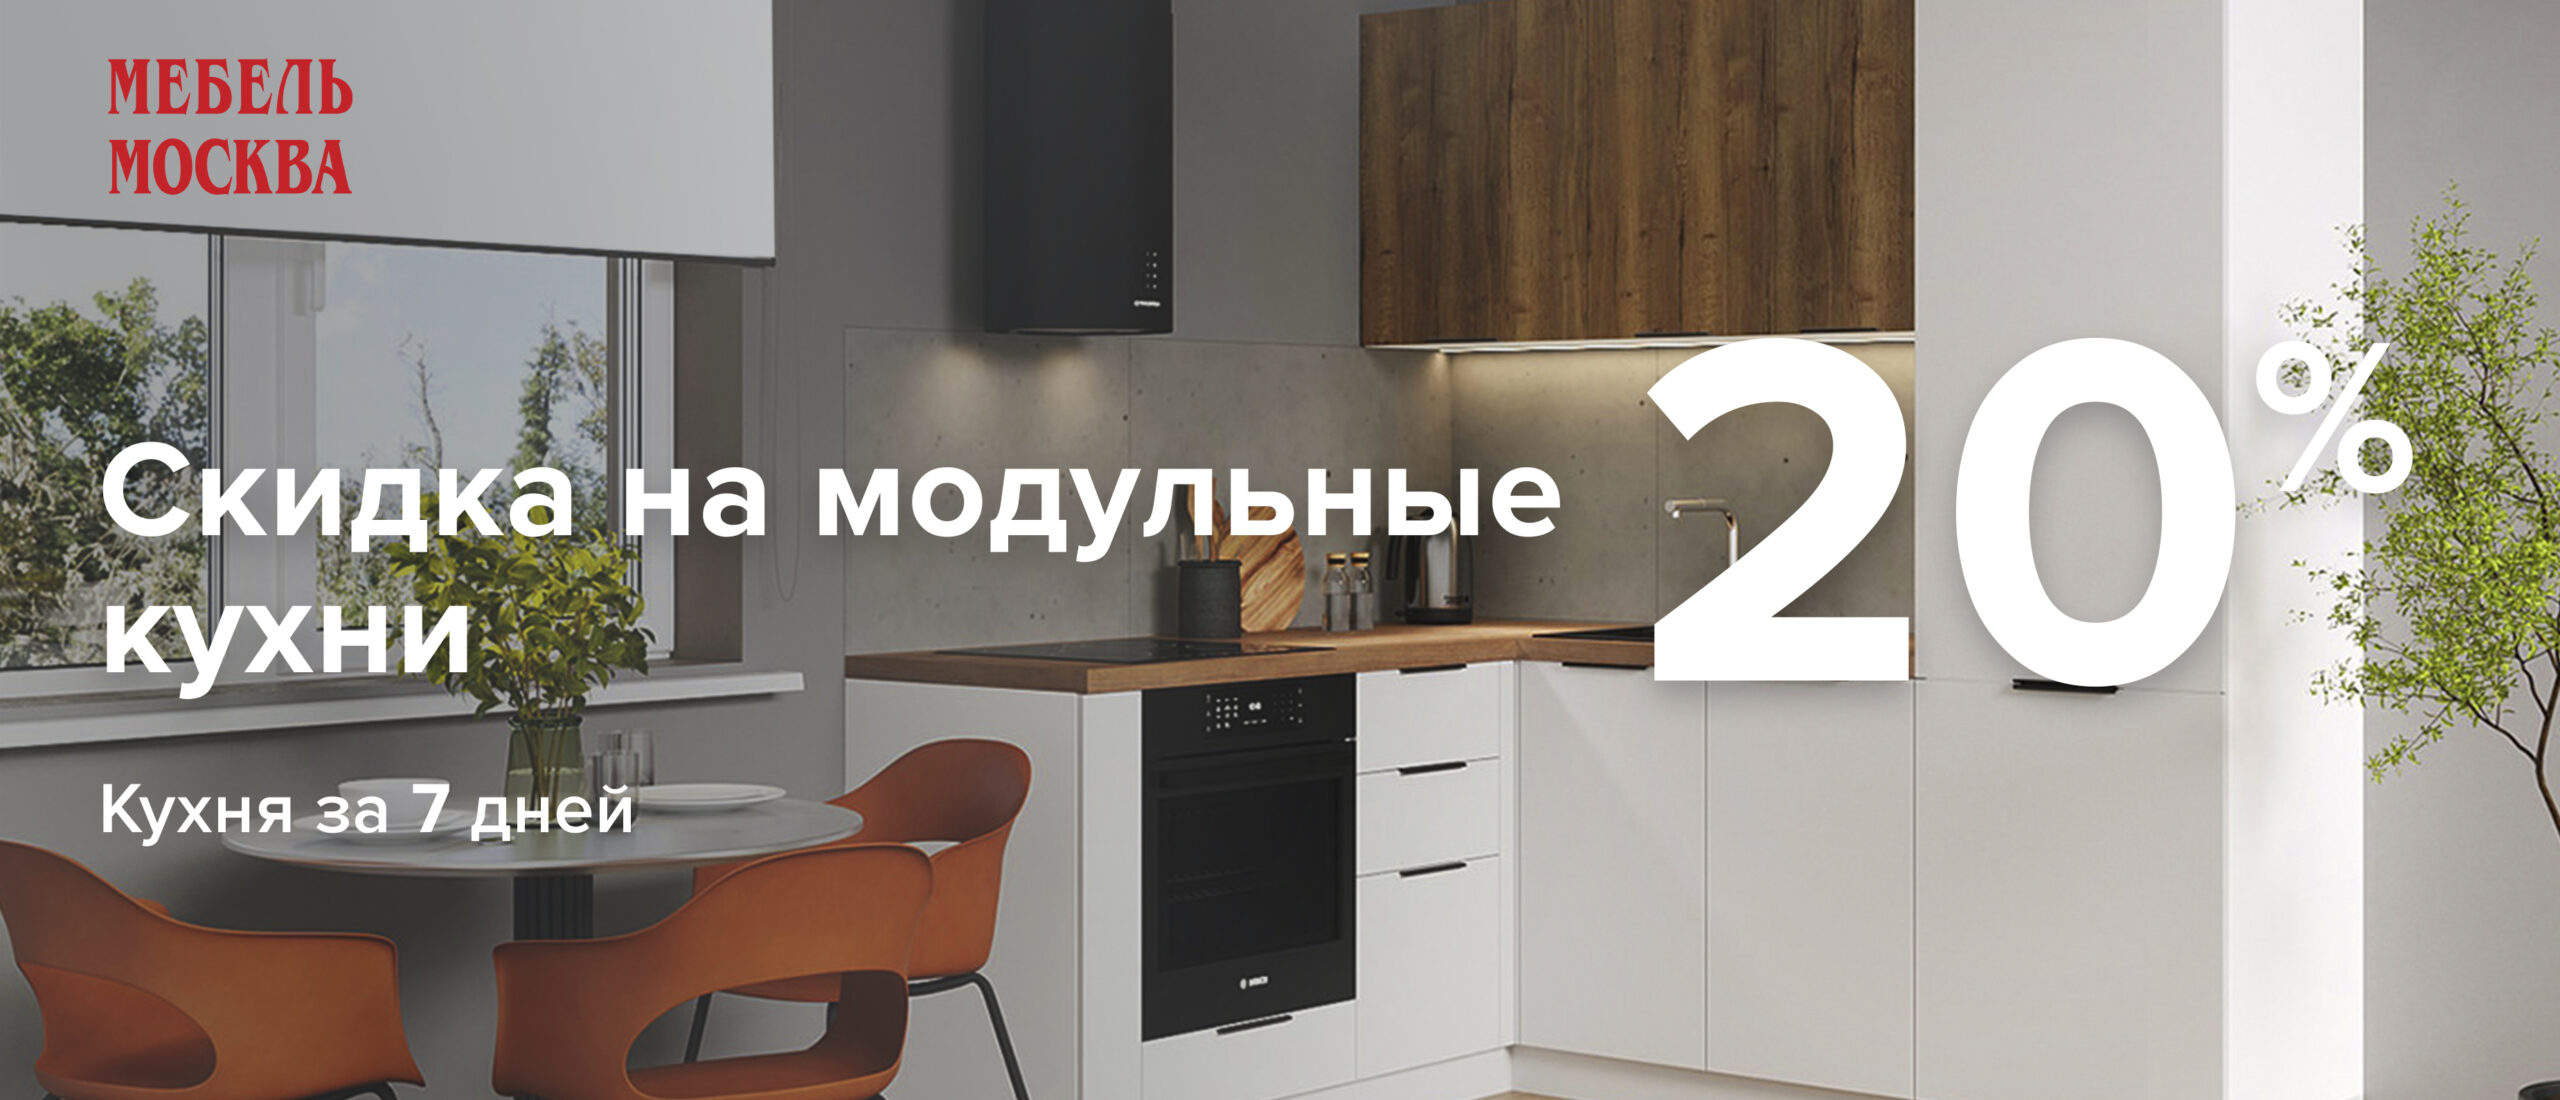 Белорусские кухни в Москве - официальный сайт, купить кухни Беларуси